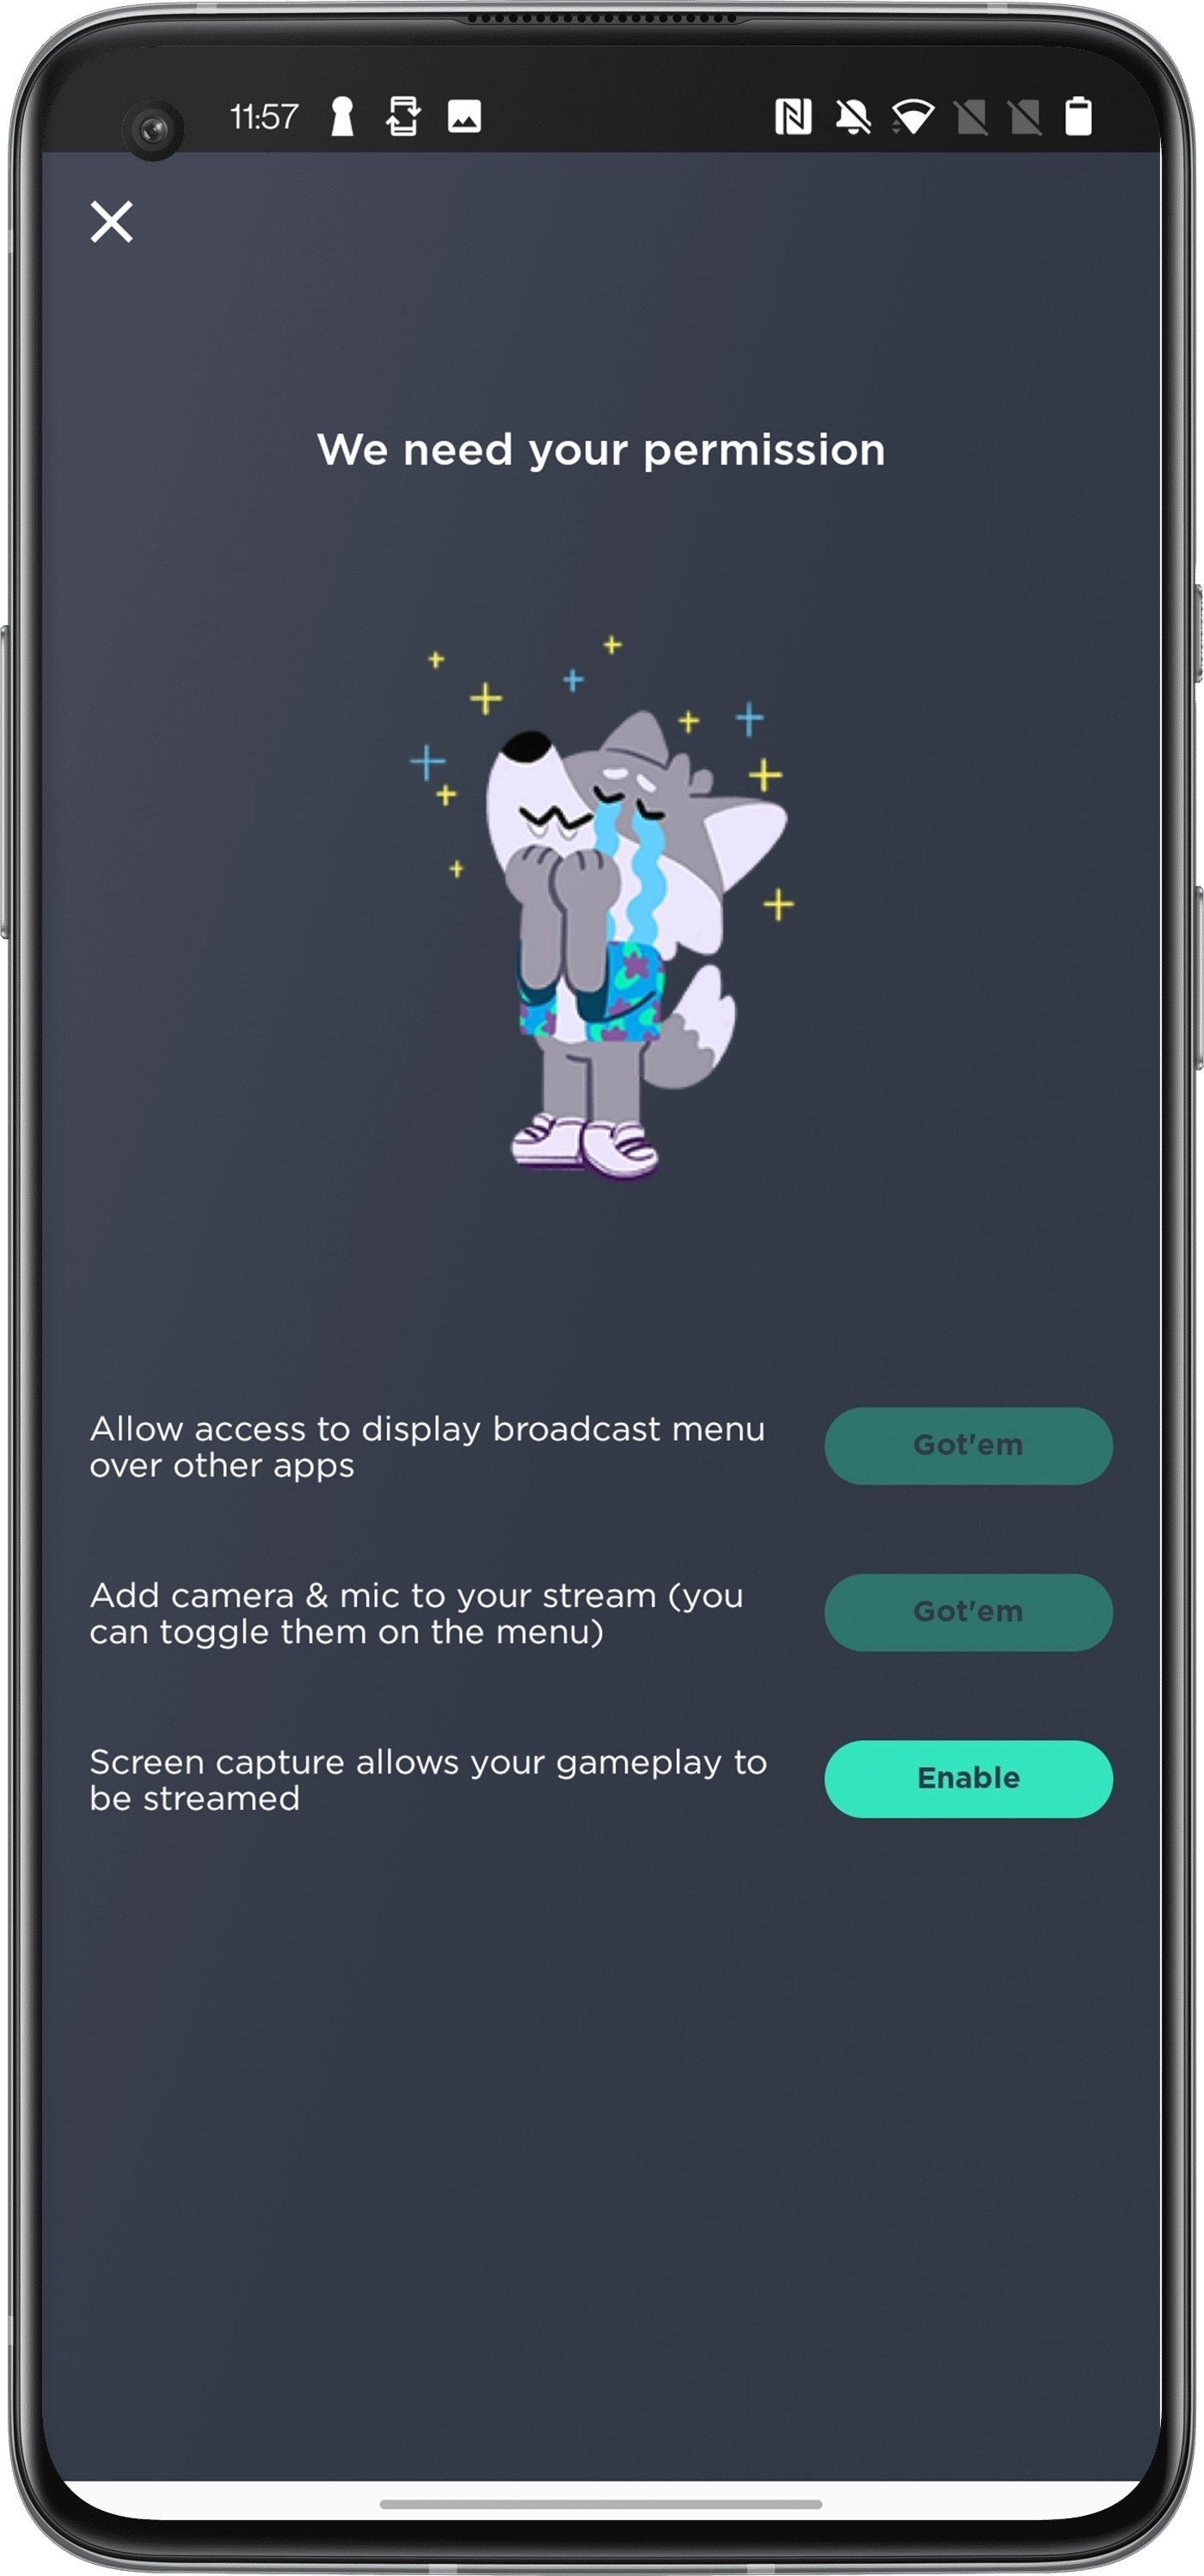 Cómo emitir en directo o streamear tus partidas online con tu móvil Android